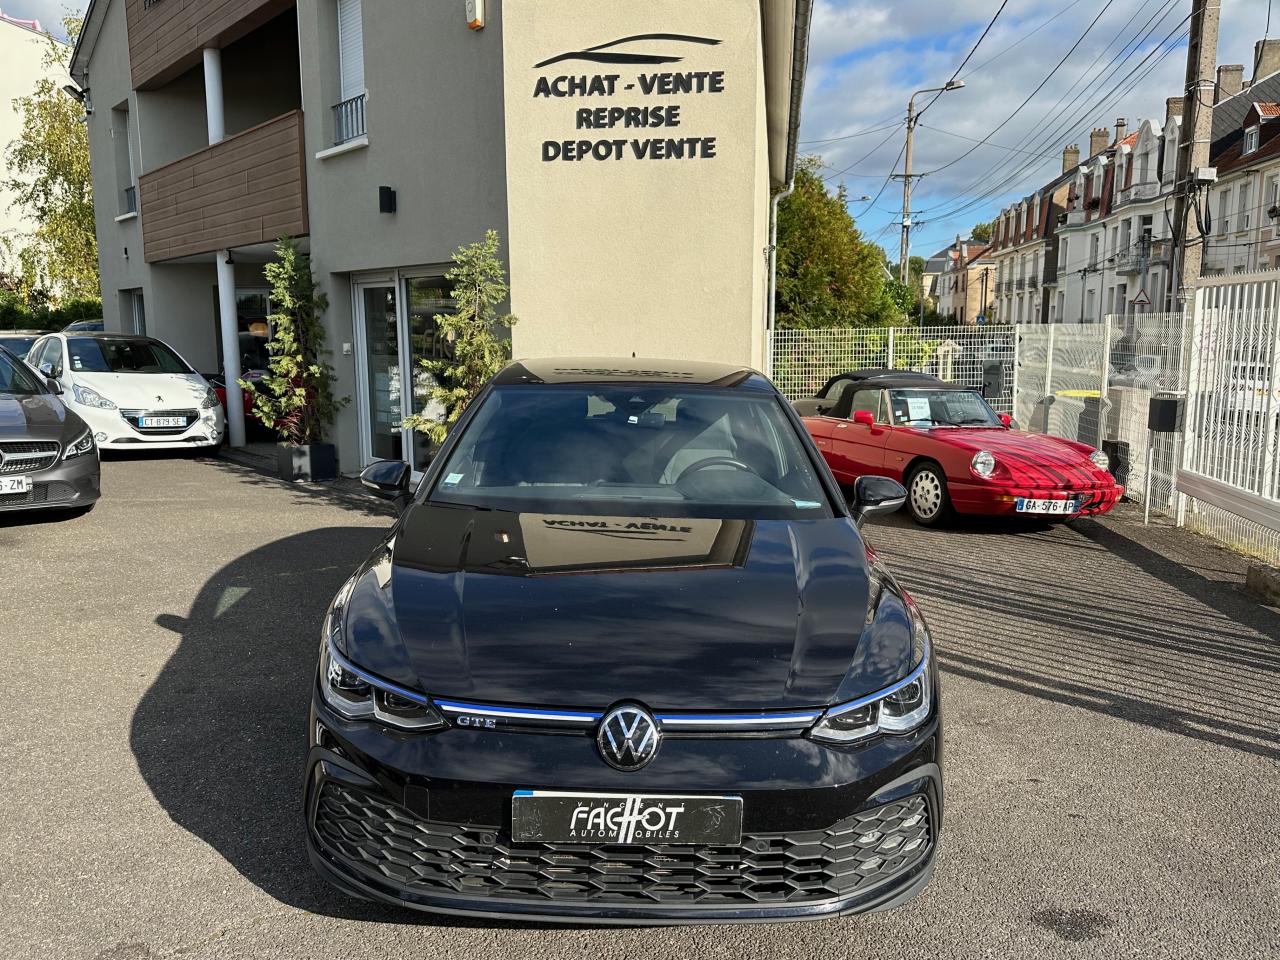 Acheter Pour Volkswagen Golf 8 voiture fenêtre arrière aile